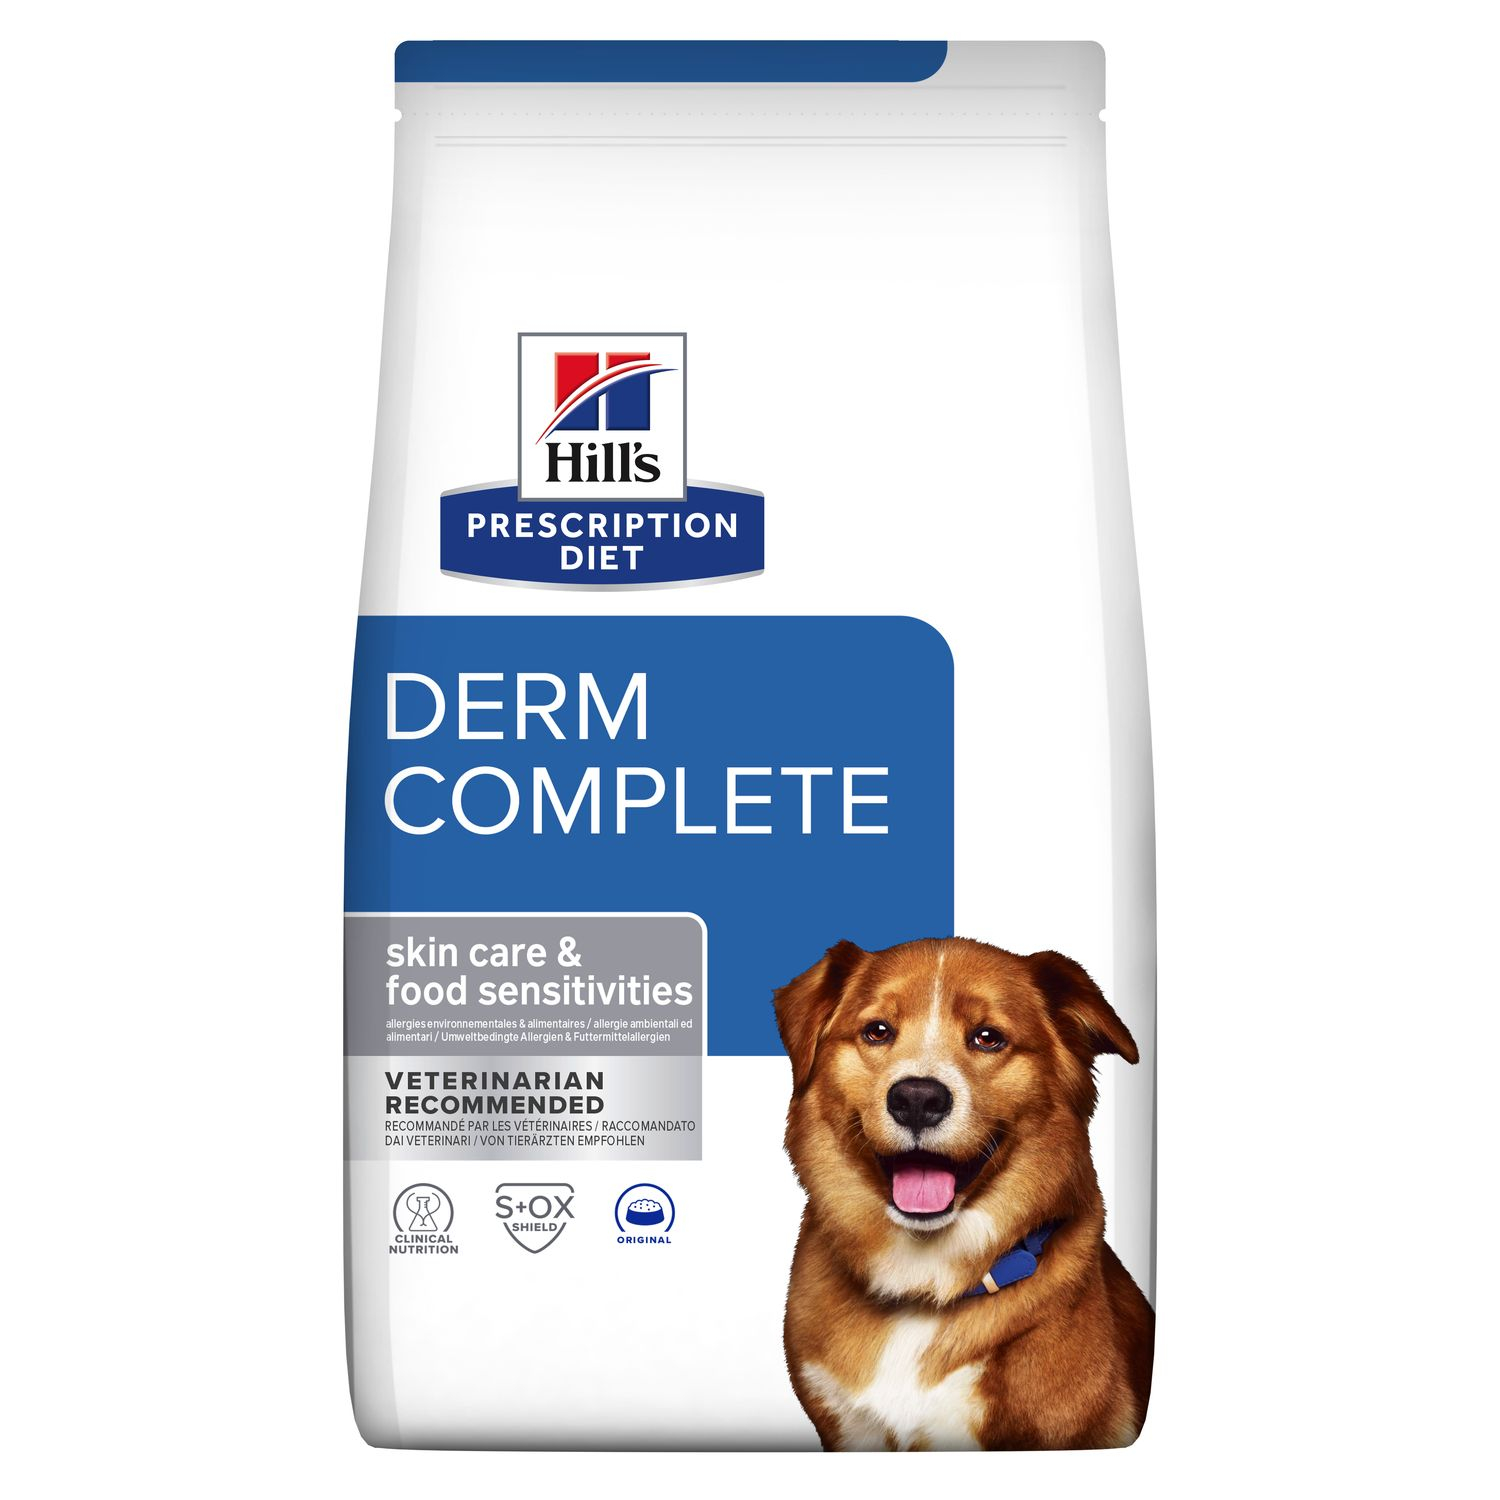 Hill s PRESCRIPTION DIET Derm Complete Dog Food